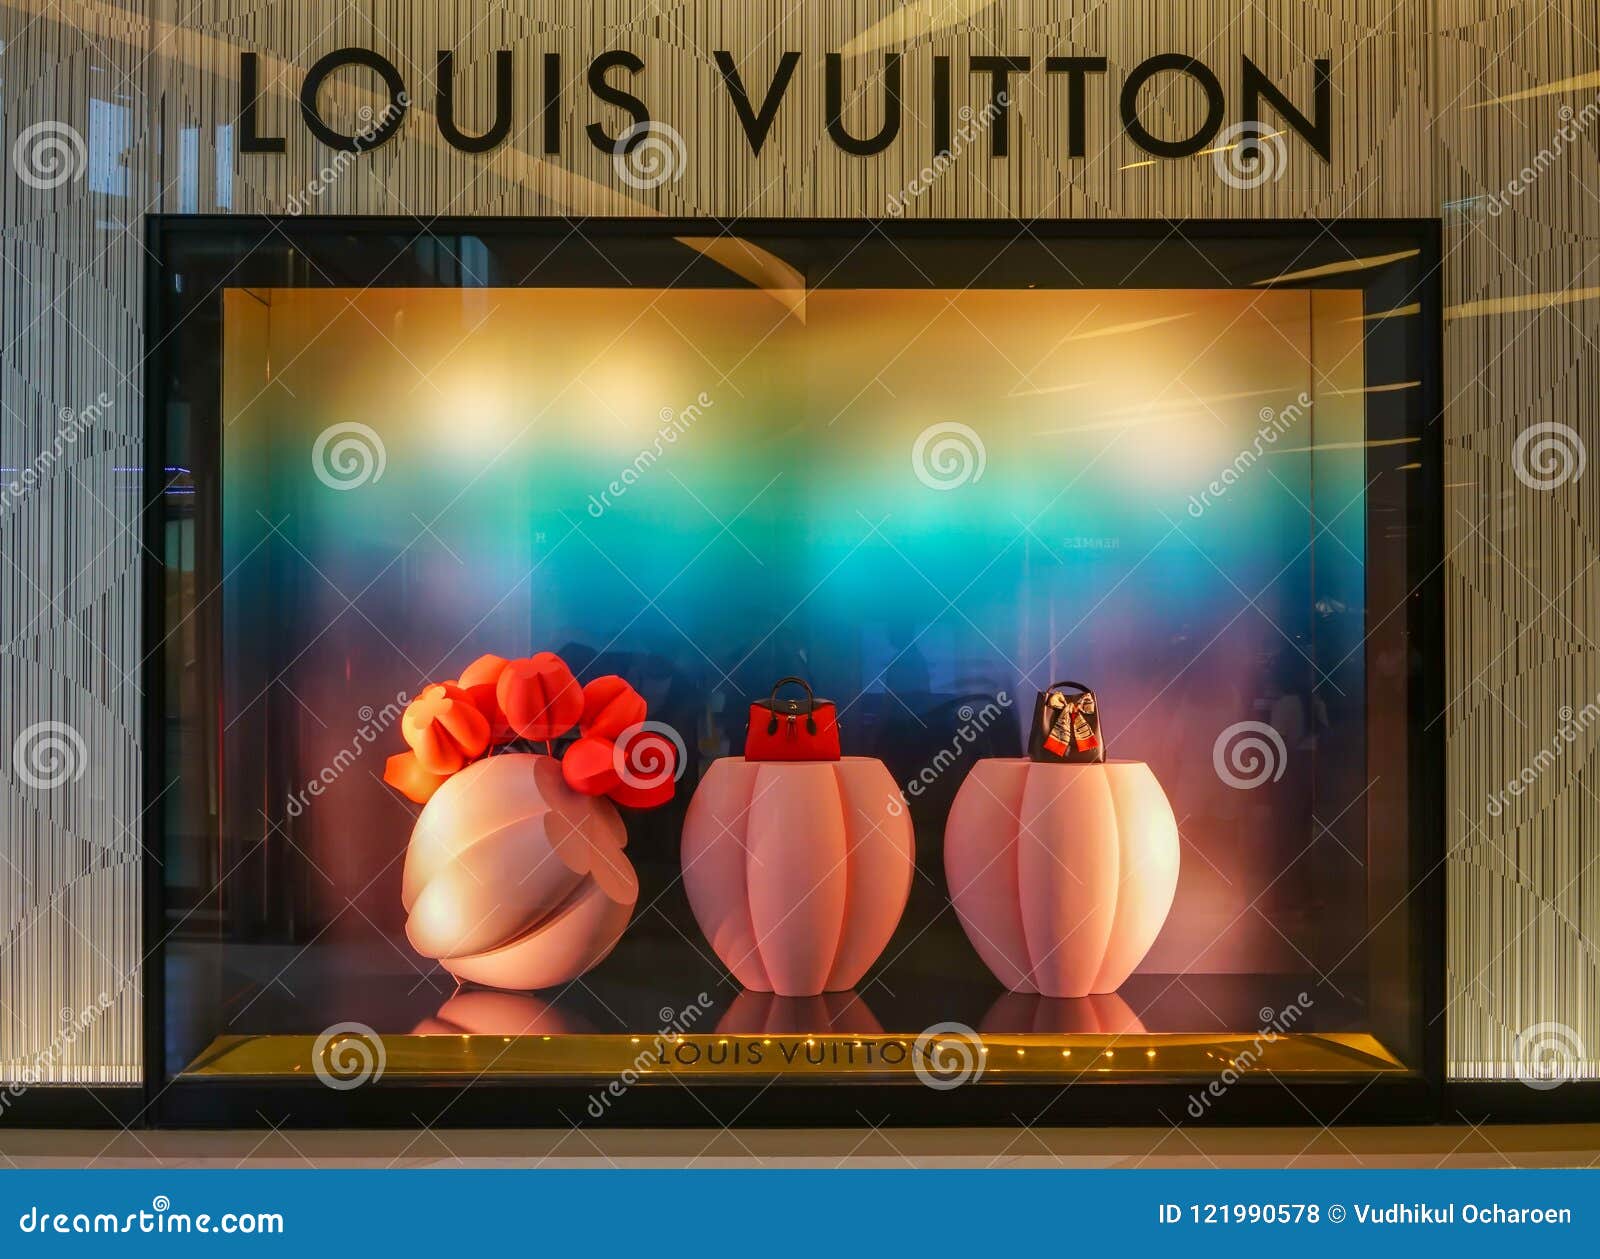 Louis Vuitton Shop At Siam Paragon, Bangkok, Thailand, May 9, 20 Editorial Stock Photo - Image ...